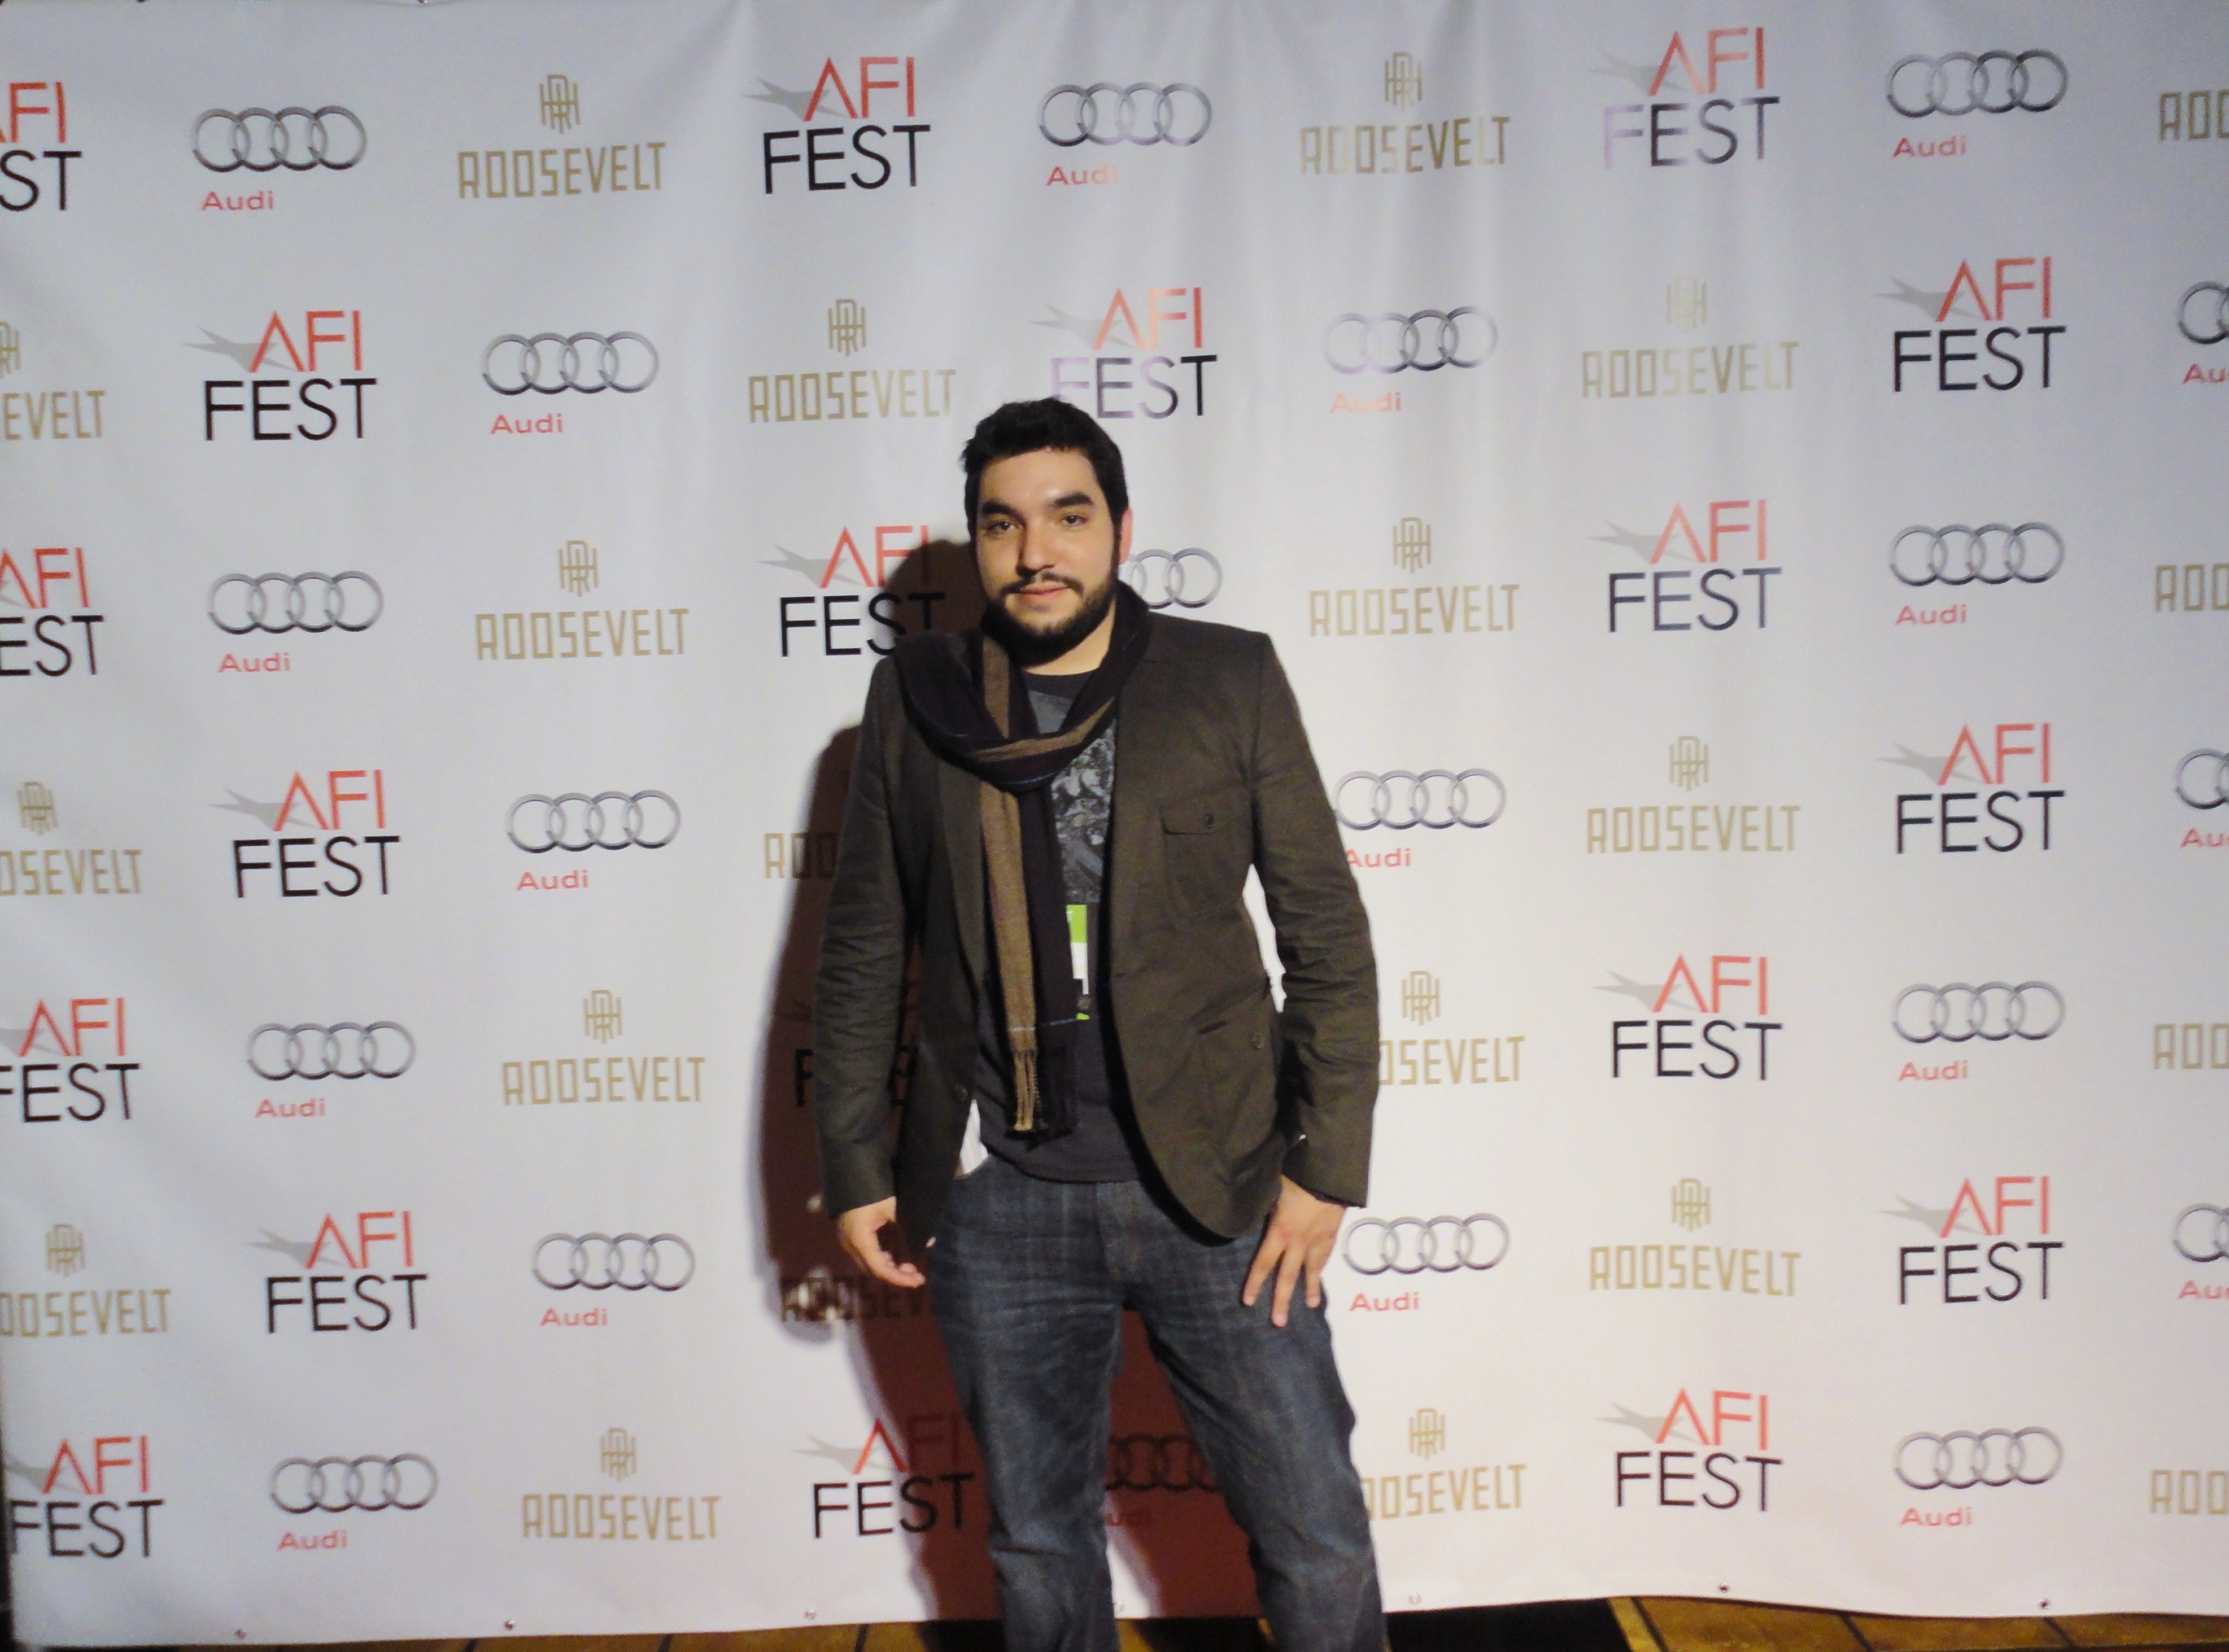 AFI Fest 2010